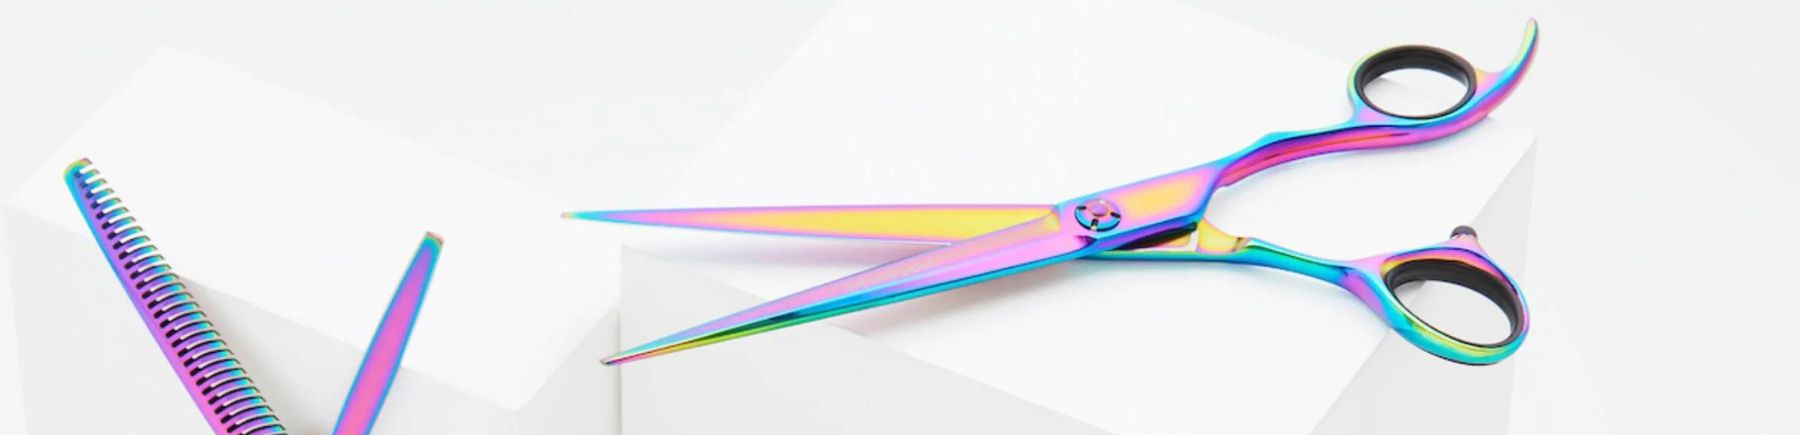 Rainbow Scissors.